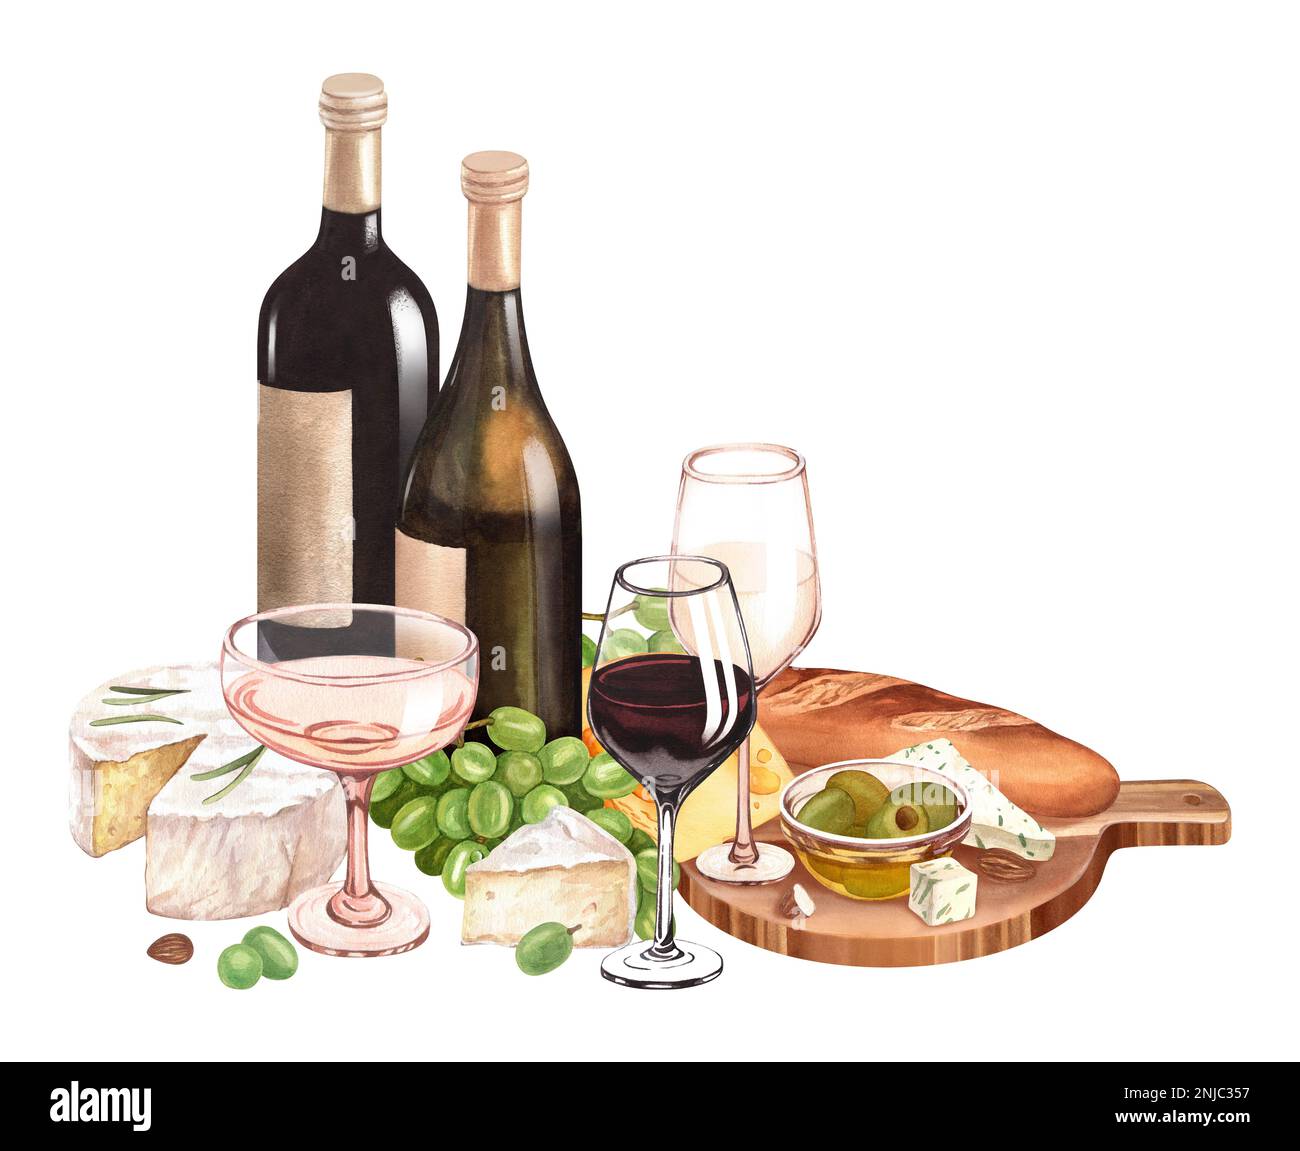 Bouteille de vin rouge aquarelle, raisins verts mûrs frais, fromage sur la planche à découper en bois. Dessinez à la main l'arrière-plan avec des objets de nourriture pour pique-nique. Banque D'Images